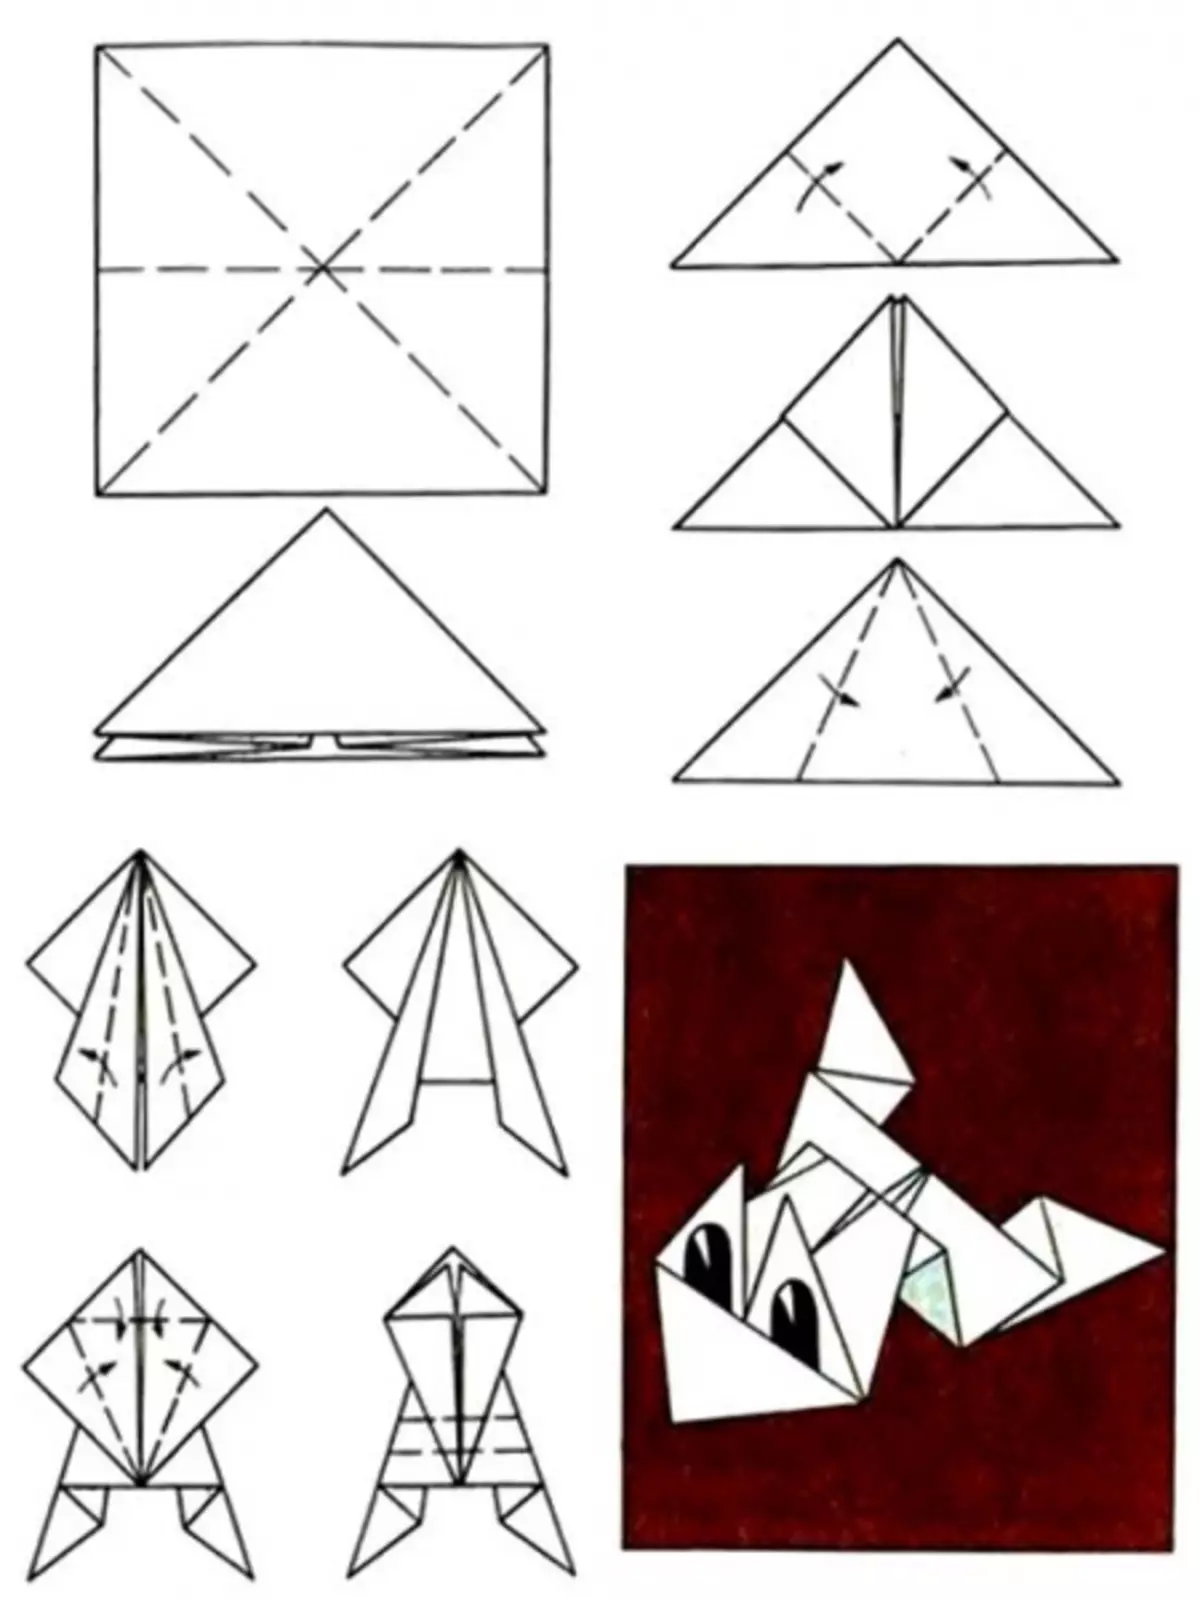 Поделки из а4 легкие. Оригами из бумаги для начинающих лягушка. Лягушка оригами из бумаги схемы для детей. Лягушка оригами из бумаги прыгающая пошагово. Как сложить лягушку из бумаги а4.